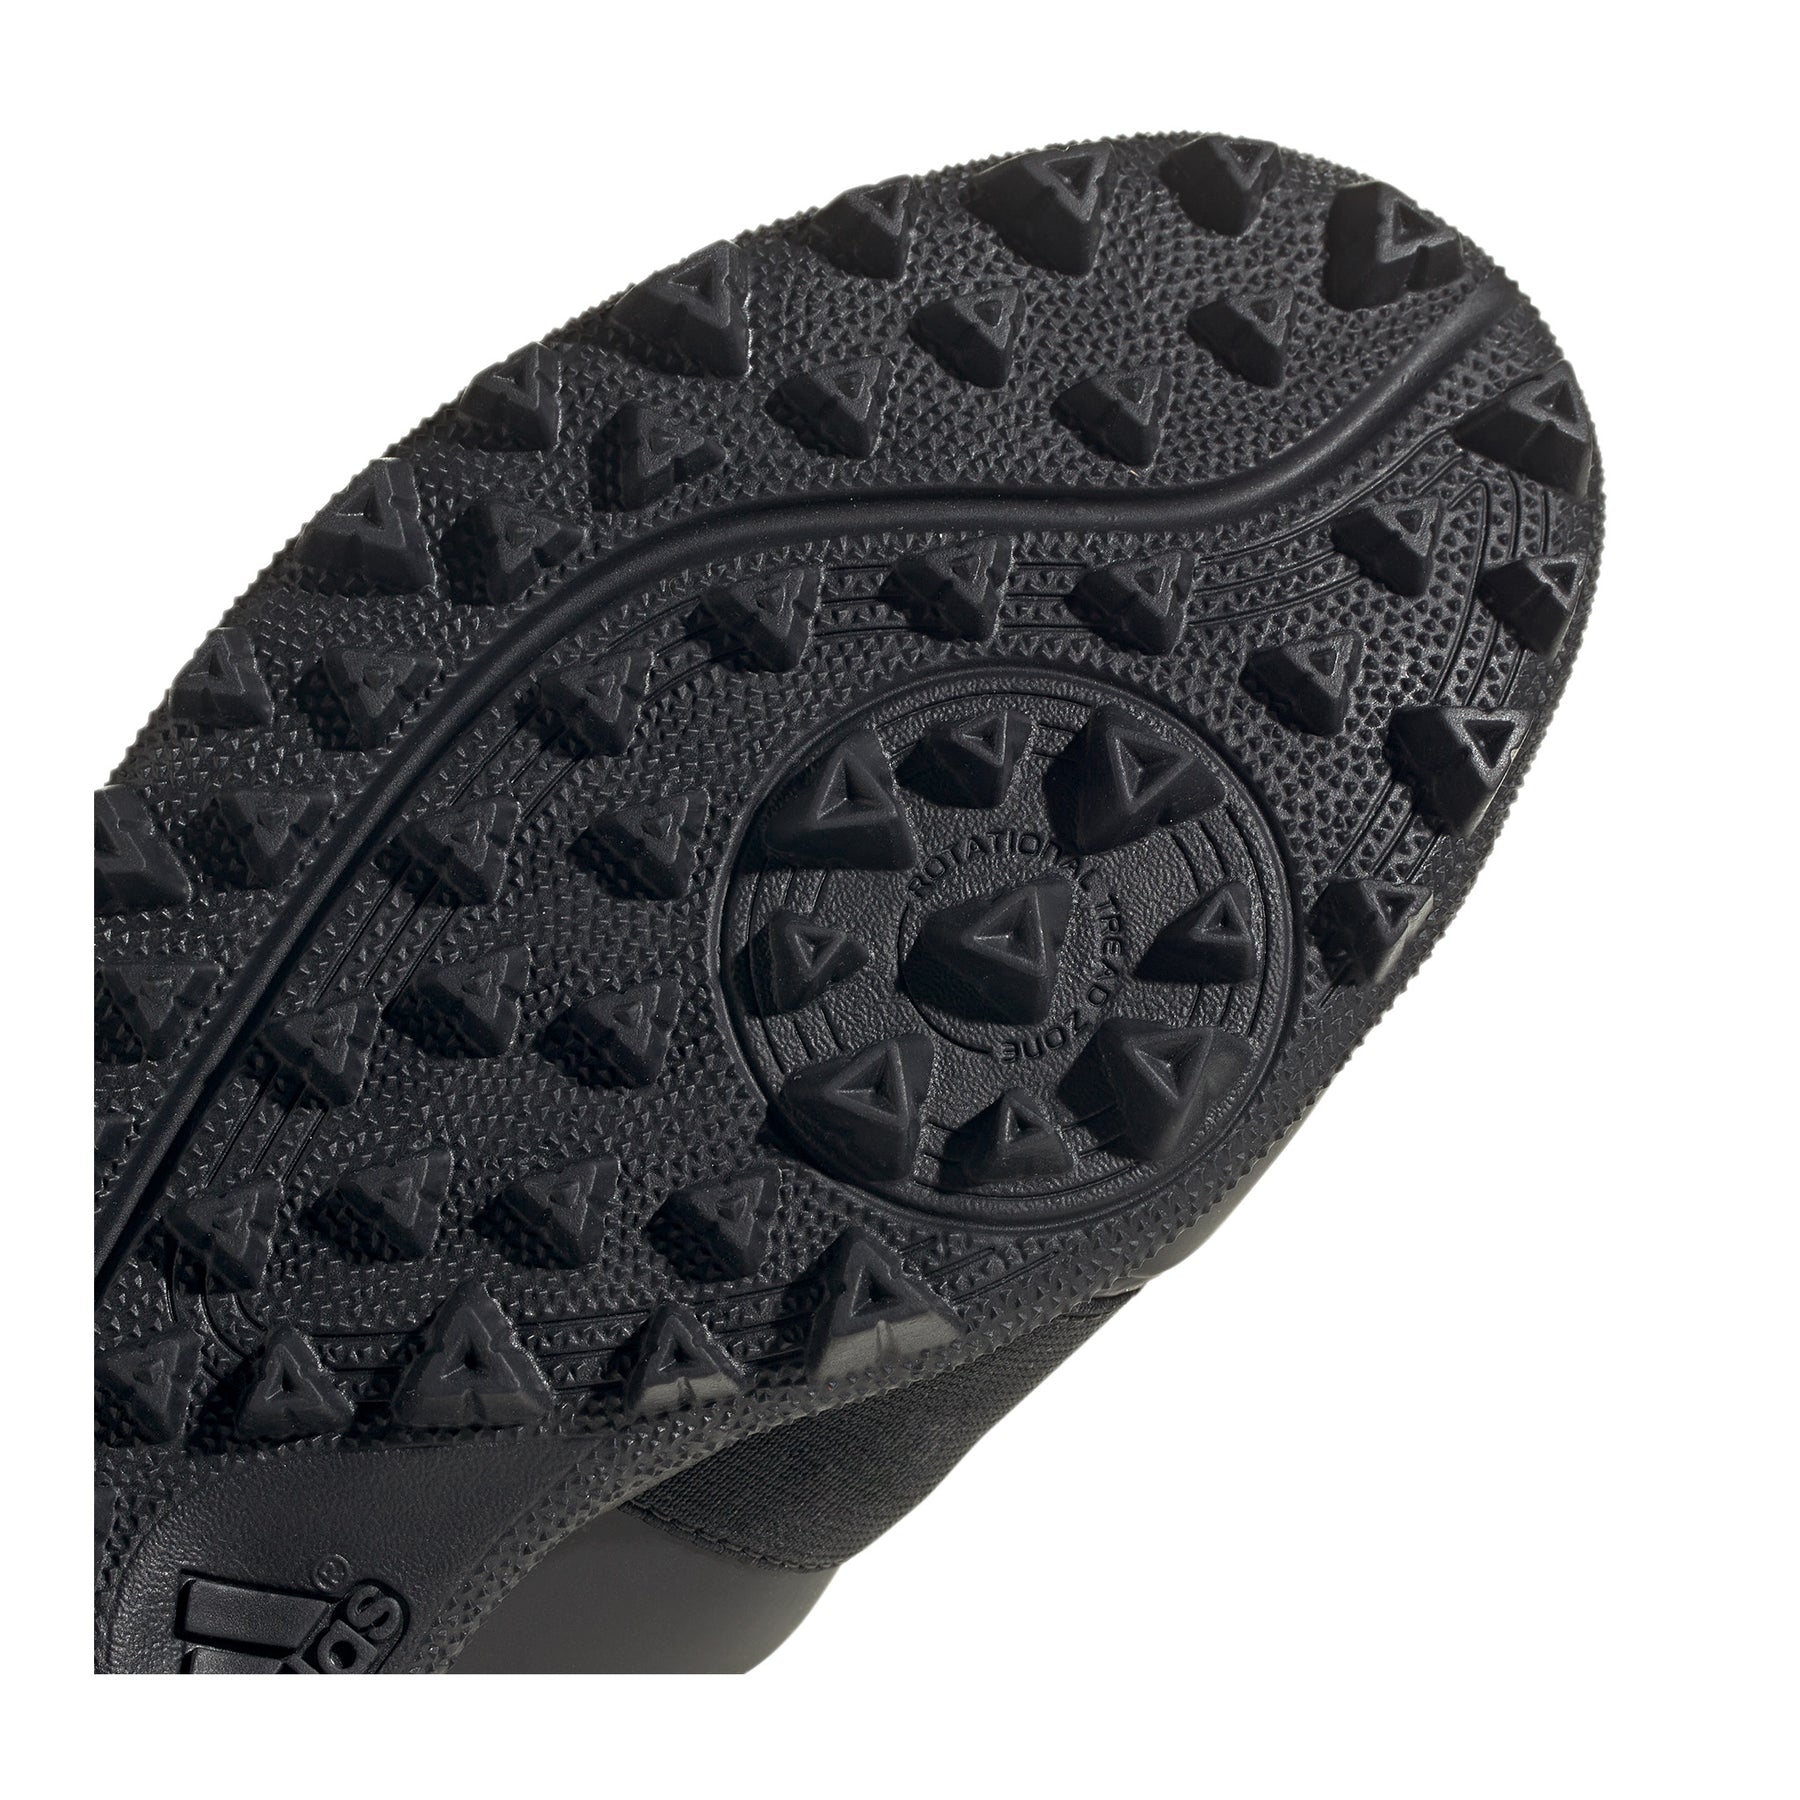 Adidas Divox Hockey Shoes: Black